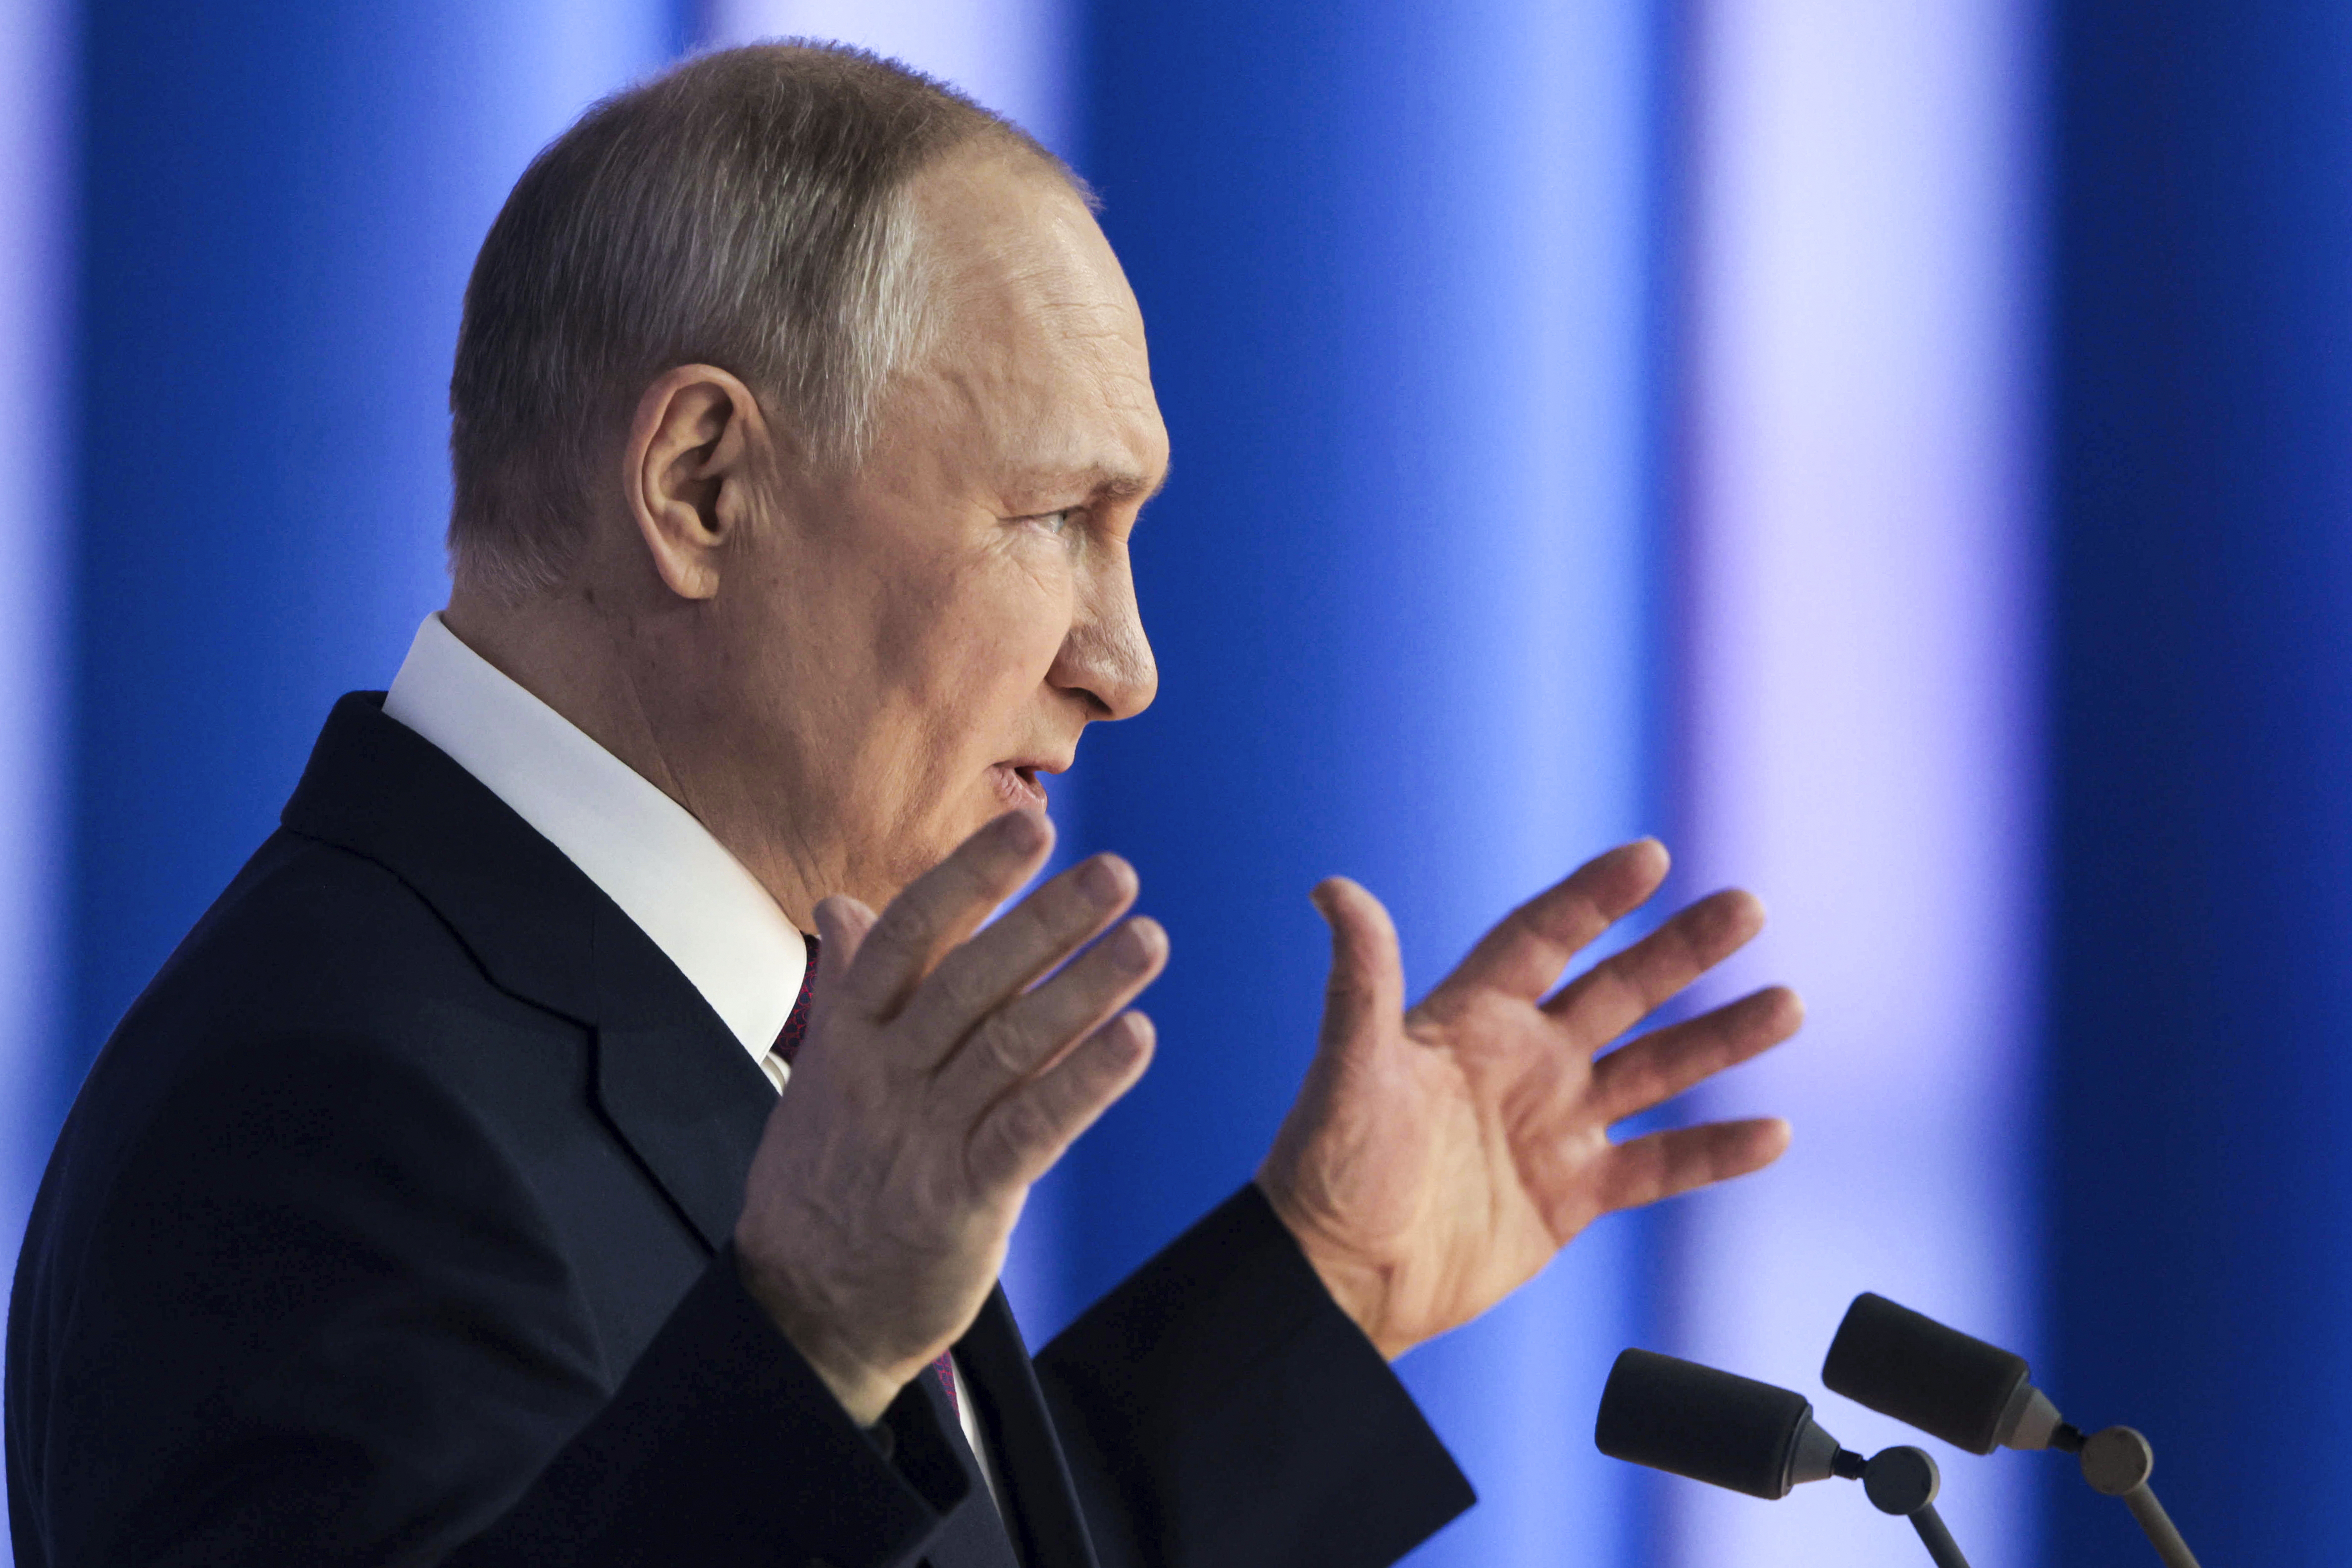 Vladimir Putin gesticula mientras ofrece su discurso anual sobre el estado de la nación (Kremlin vía AP)